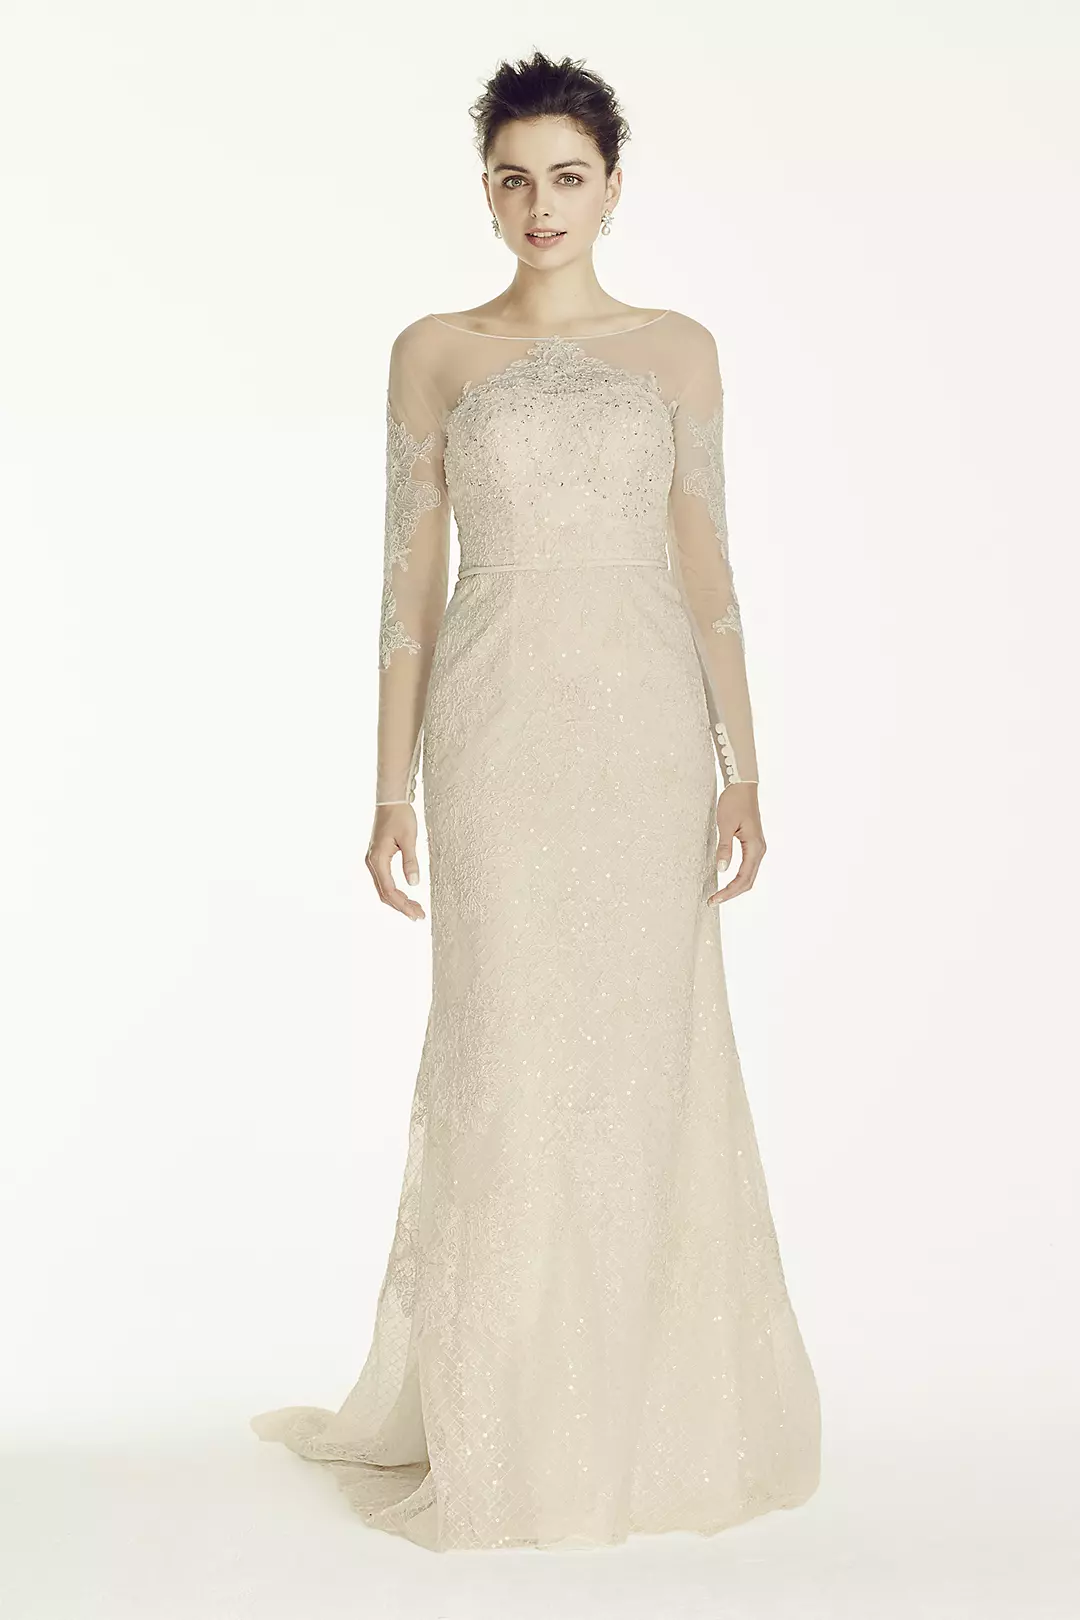 Oleg Cassini Illusion Sleeved Lace Wedding Dress Image